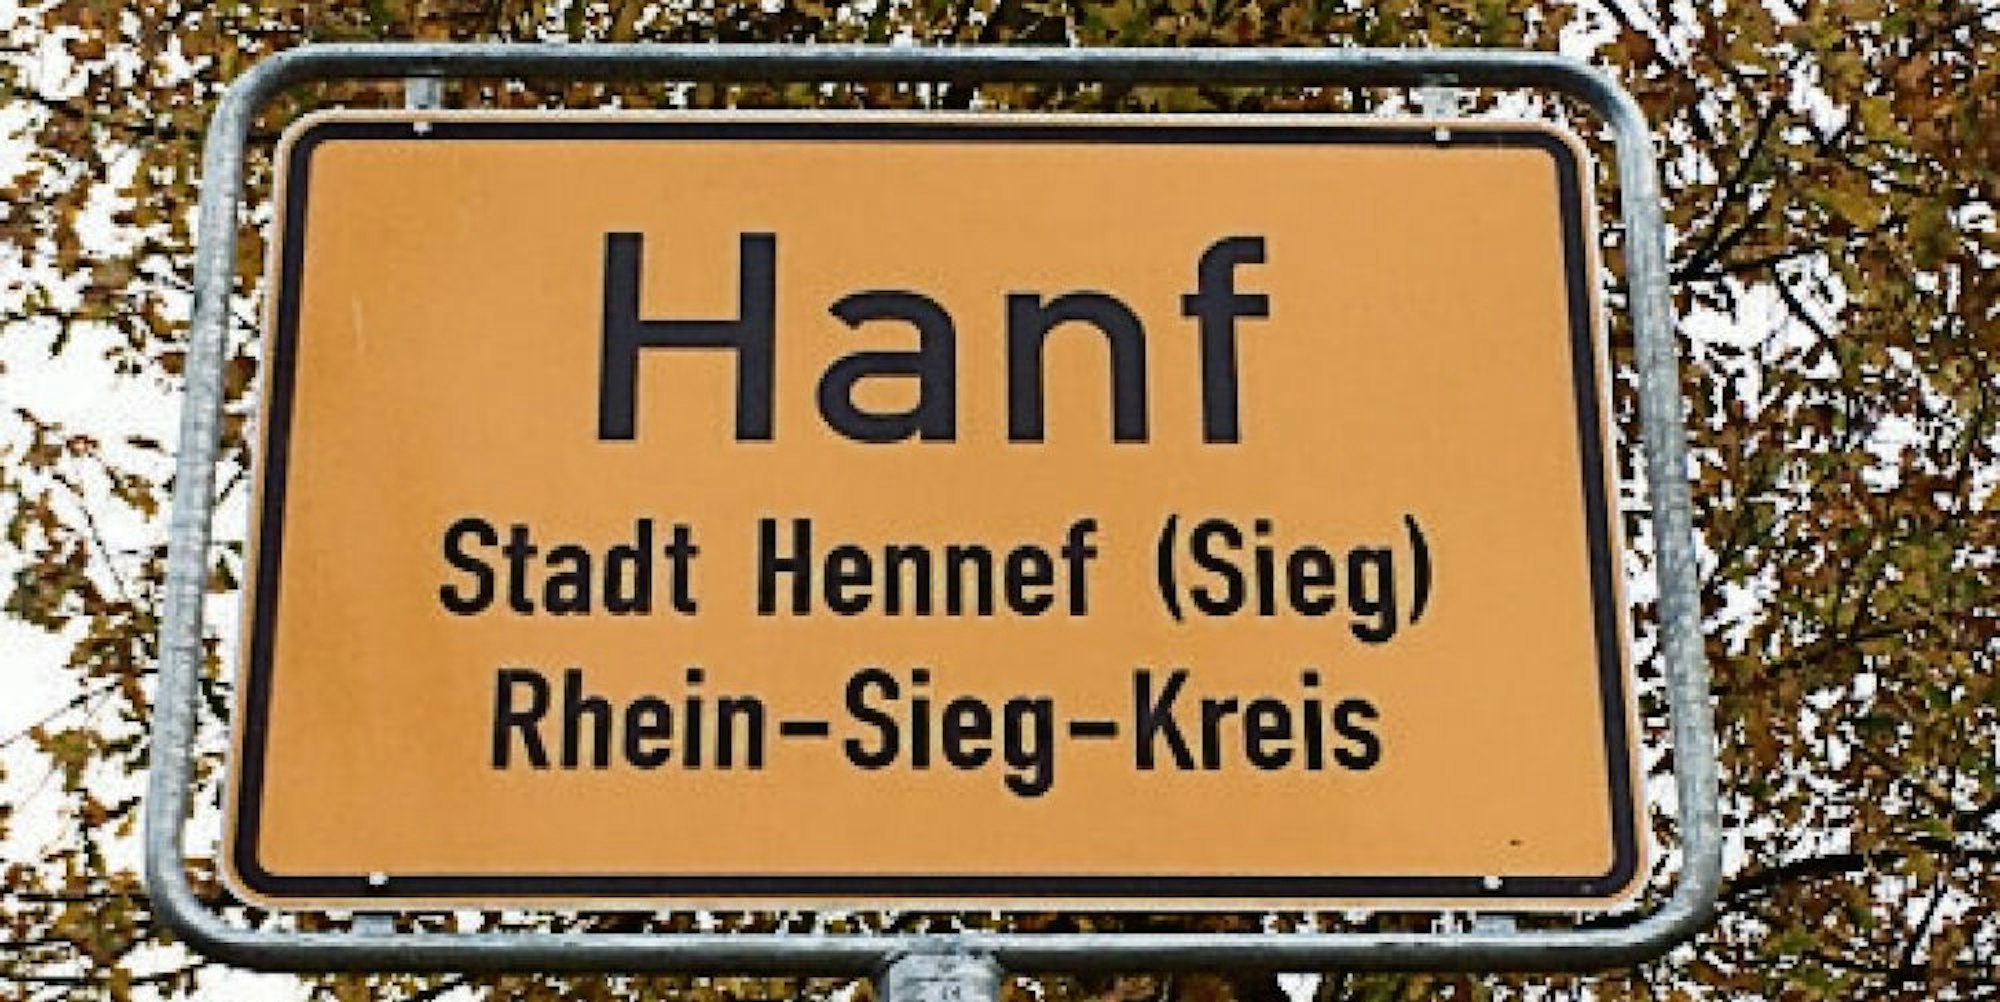 Die Ortsschilder des Hennefer Stadtteils Hanf sind ersetzt worden.